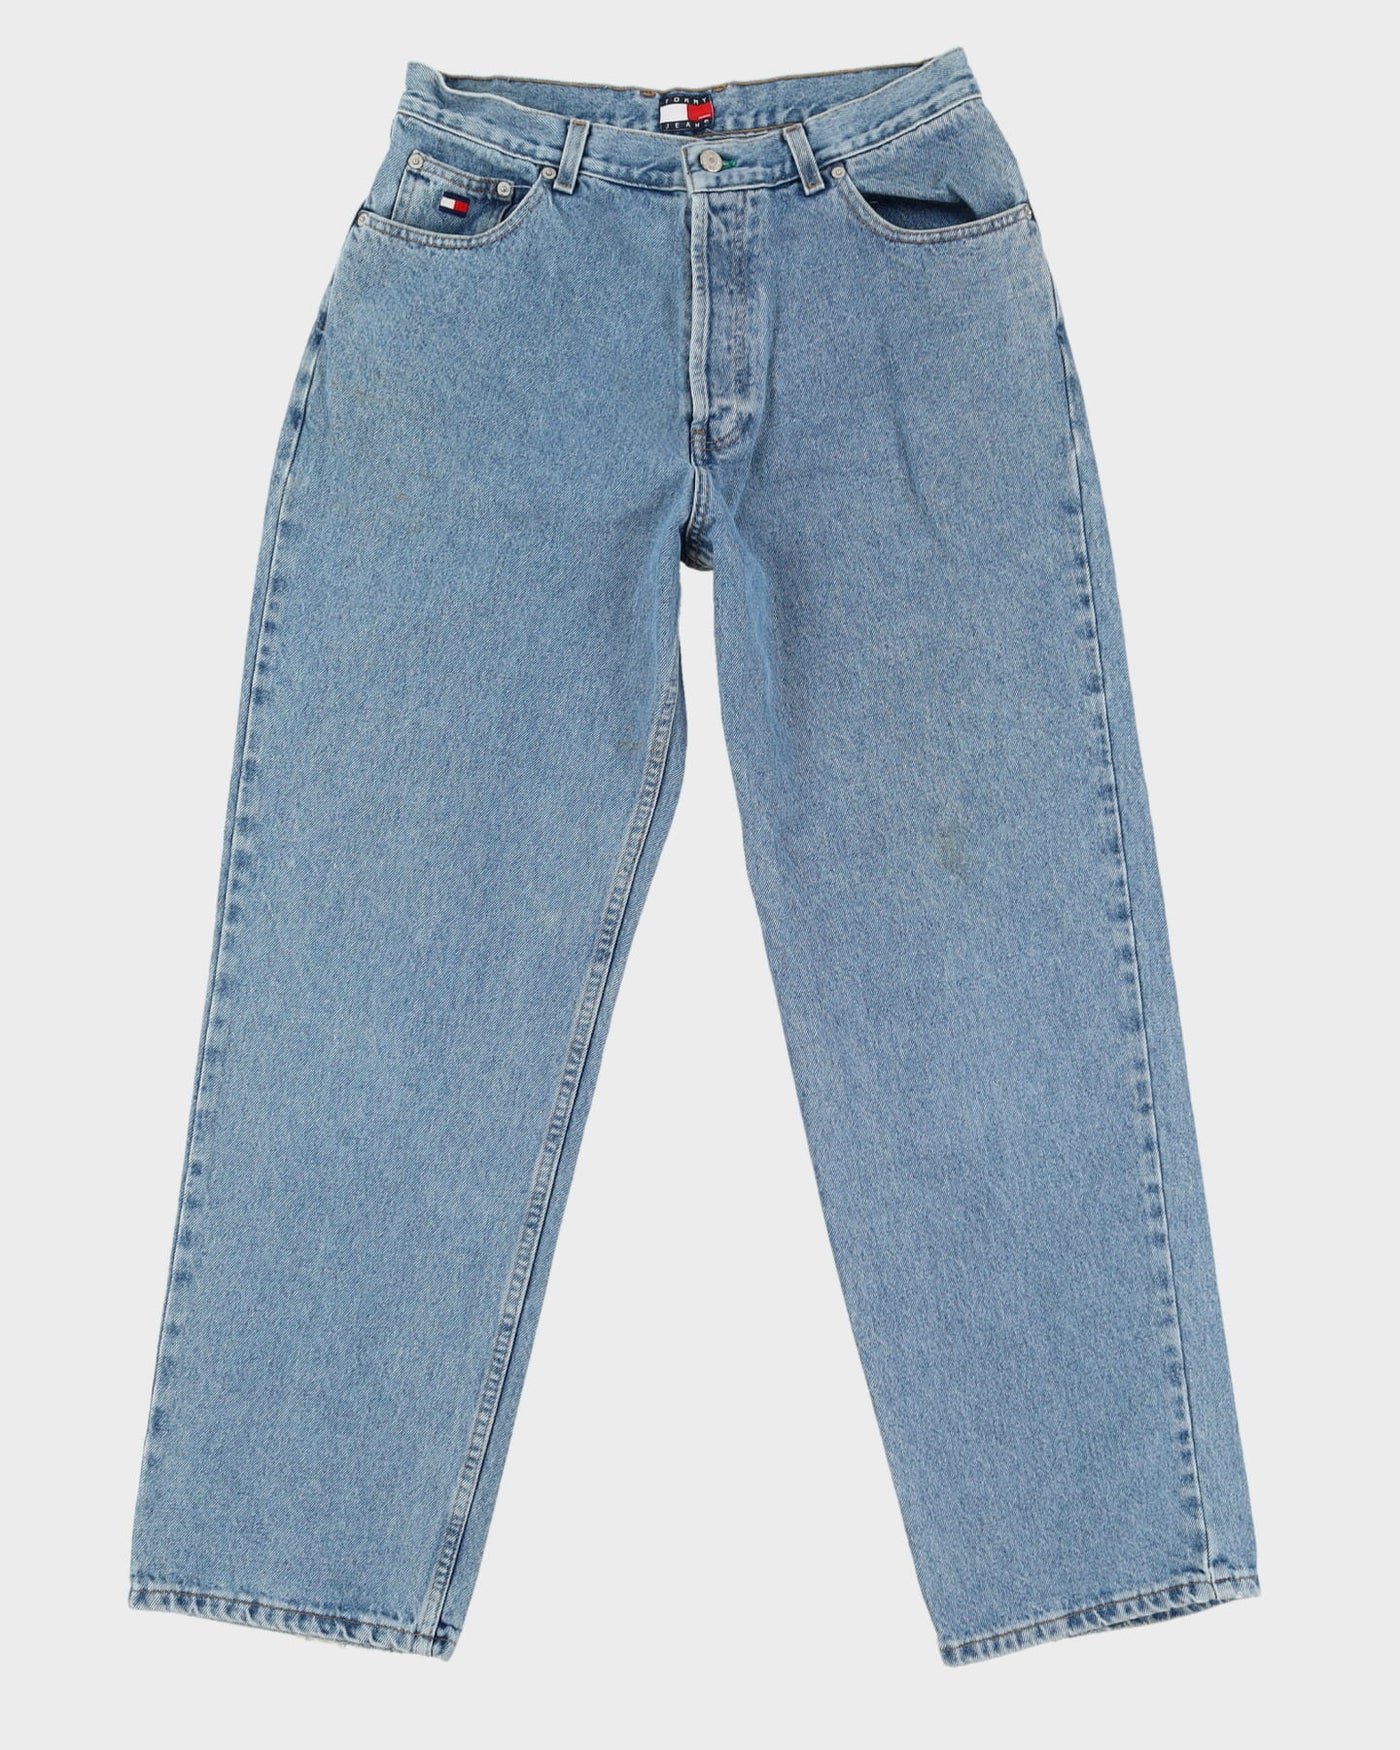 Vintage 90s Tommy Hilfiger Light Wash Blue Jeans - W32 L31